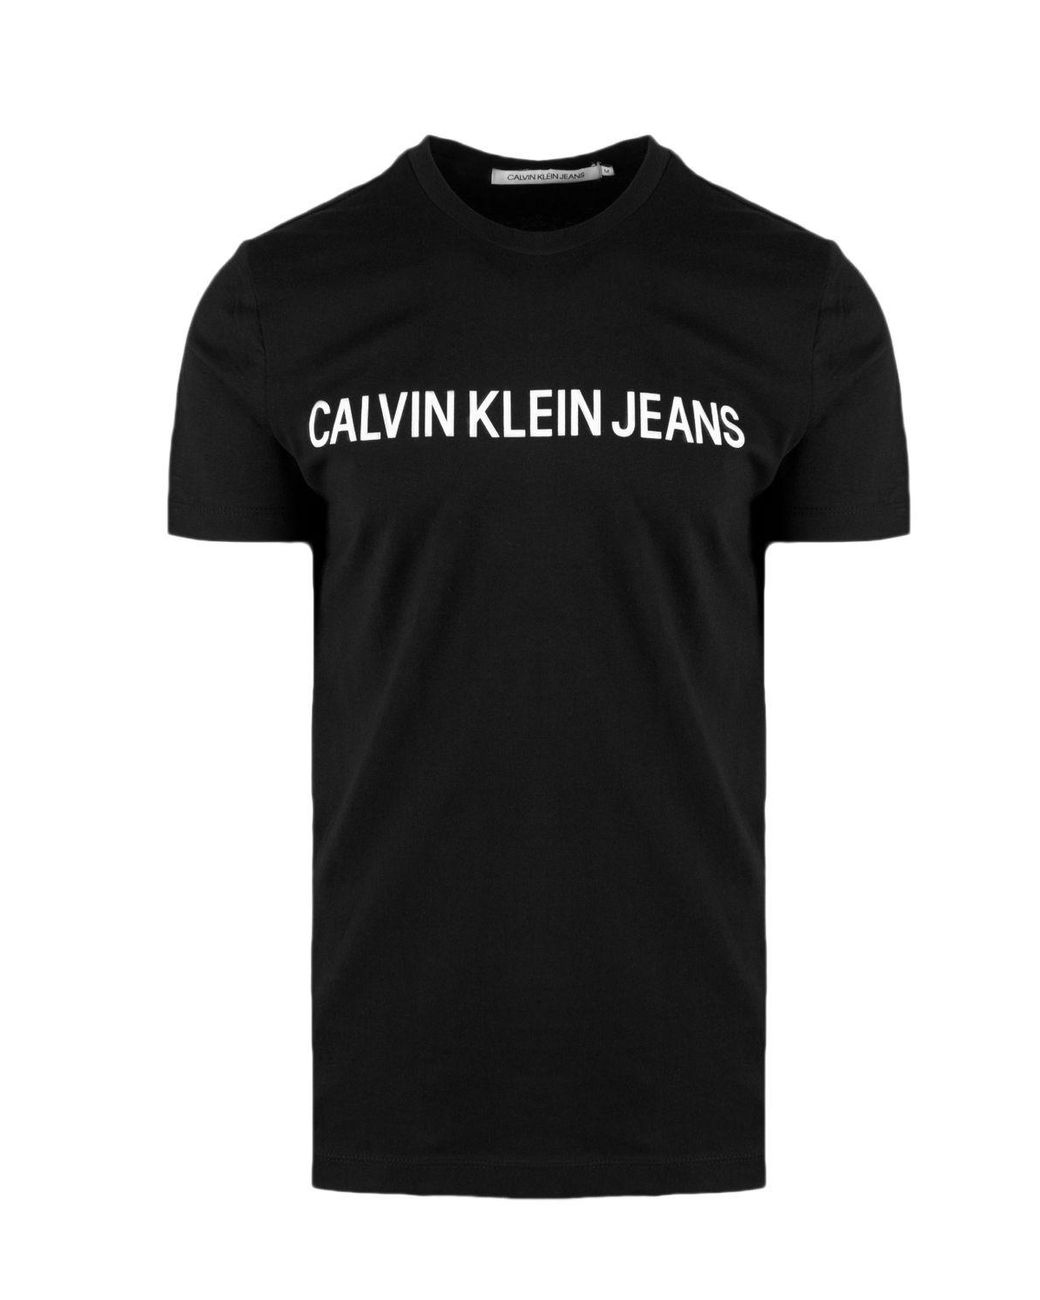 Calvin Klein Cotton T-shirt in Black for Men - Lyst